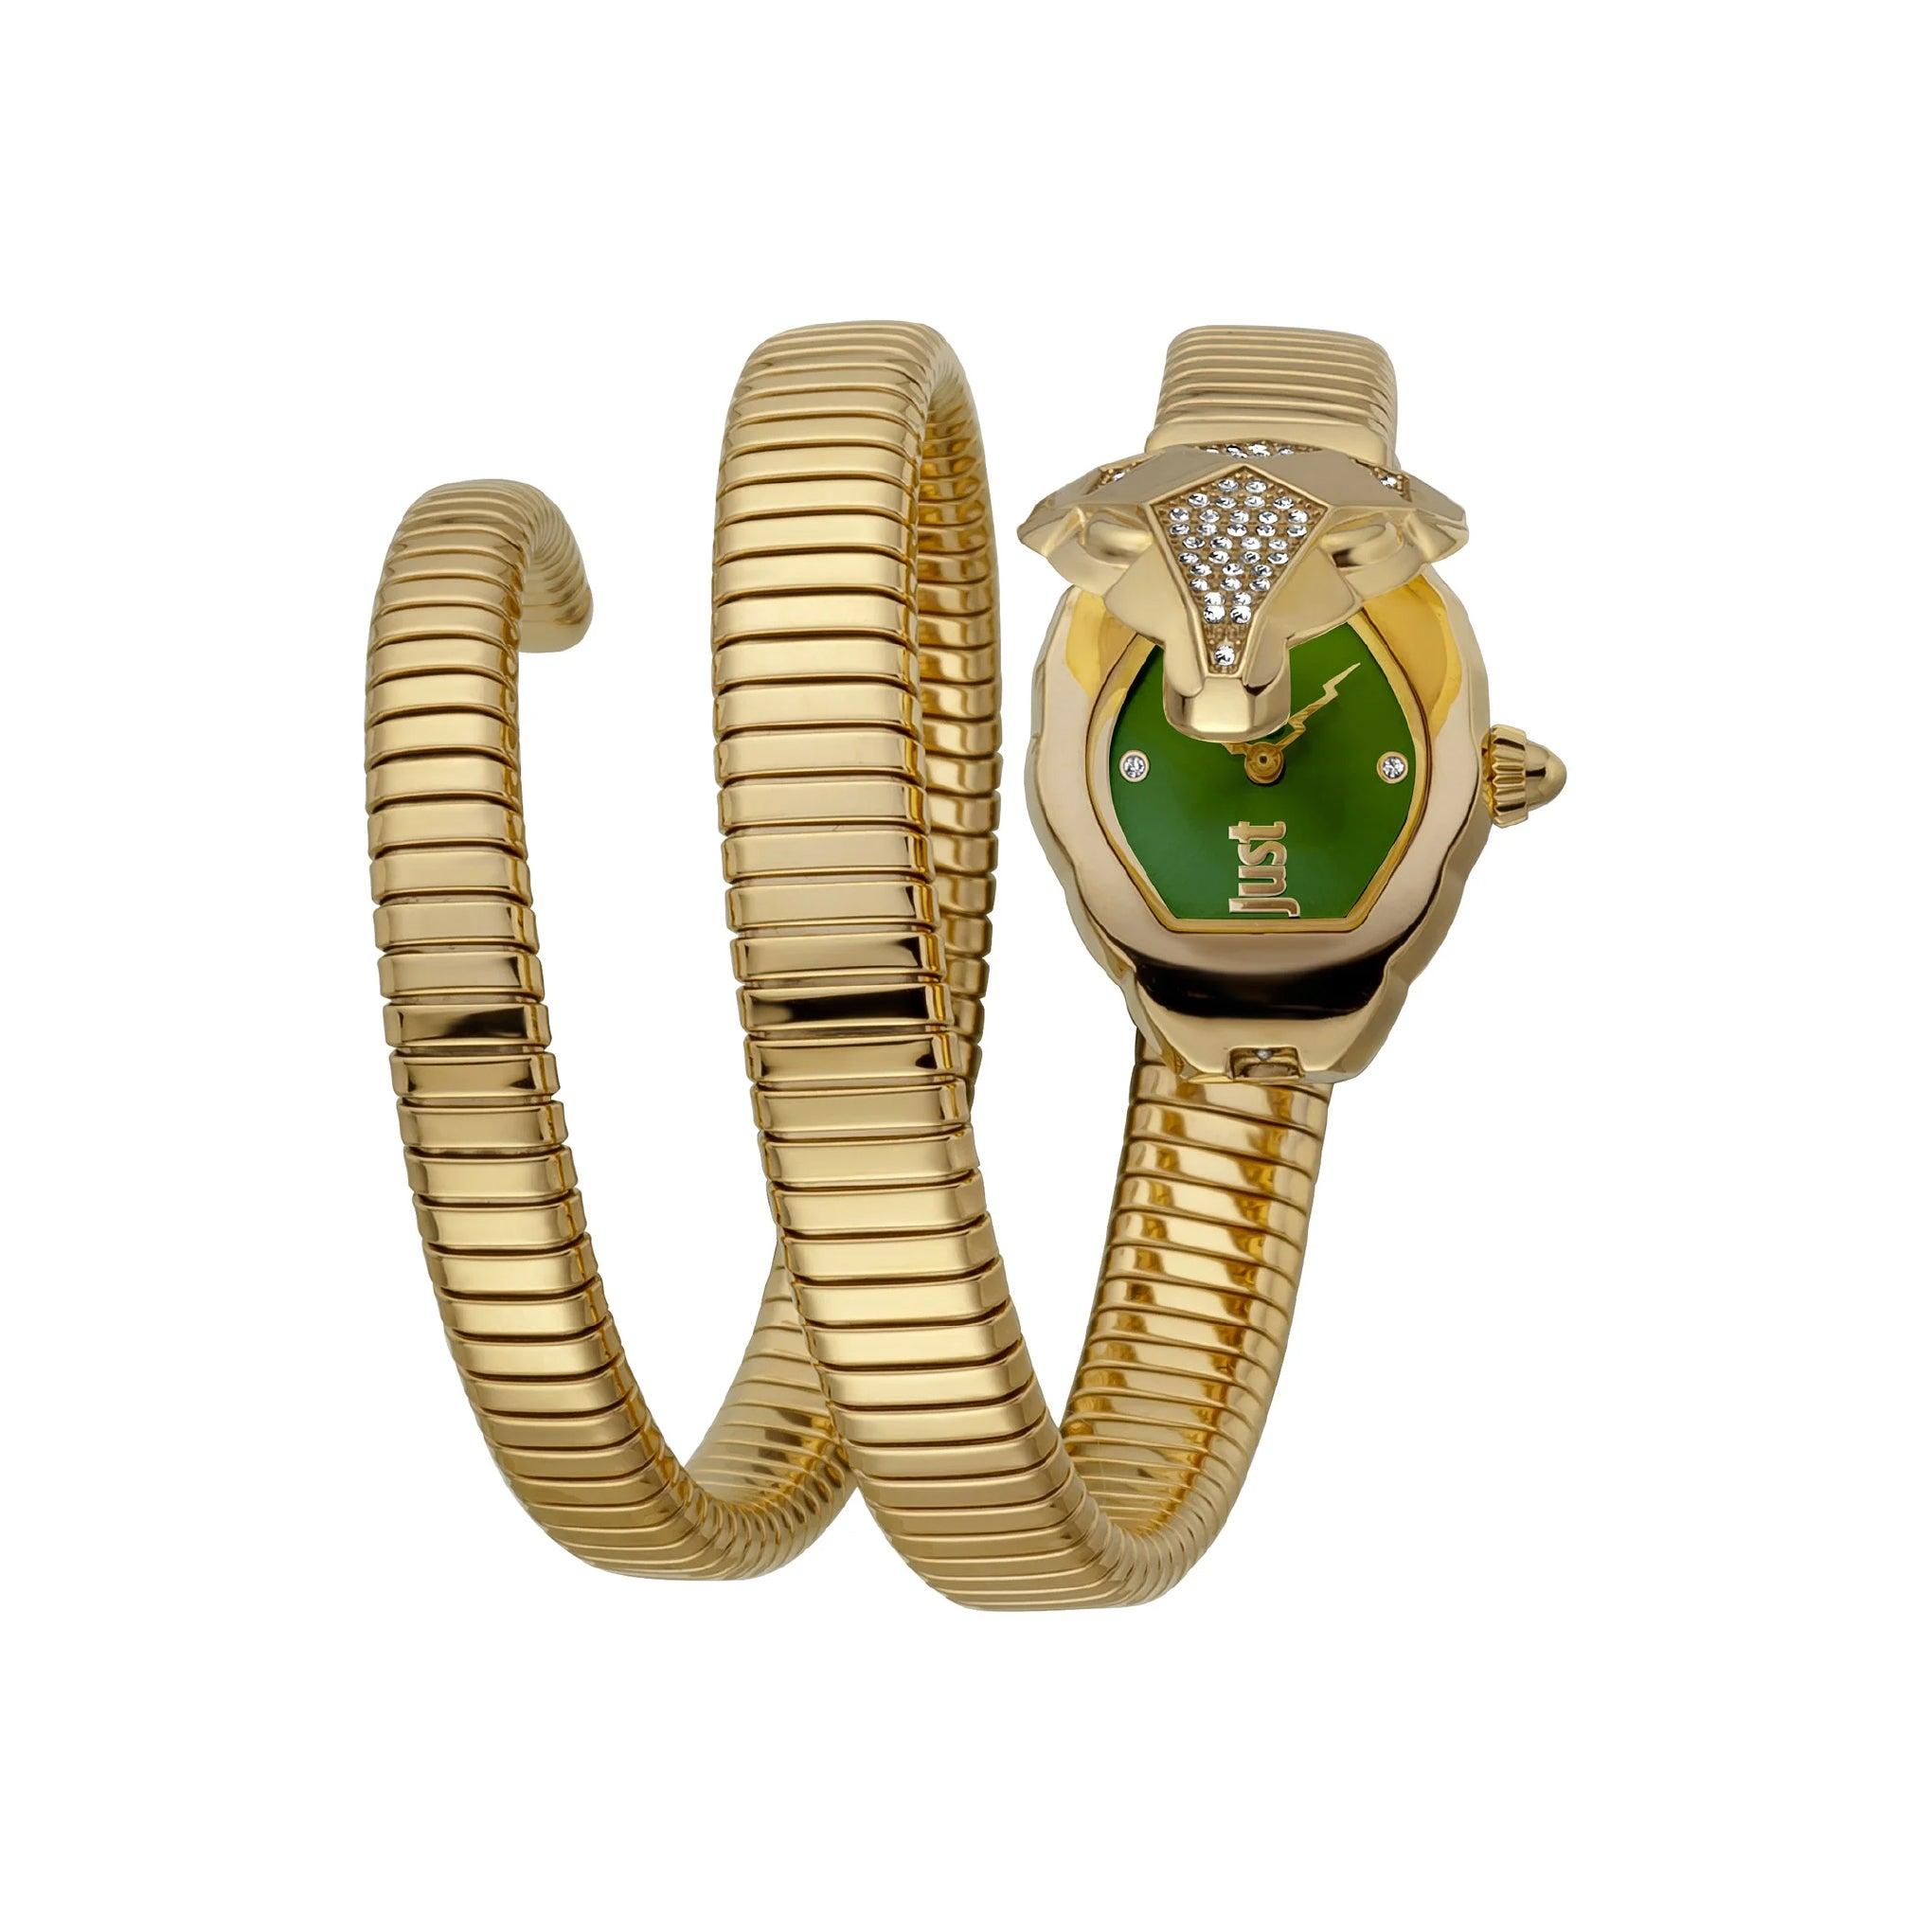 ساعة يد نسائية بشكل ثعبان - ذهبي - بحزام معدني مقاوم للصدأ جست كافالي Just Cavalli Nascosto Yellow Gold Green Quartz Watch